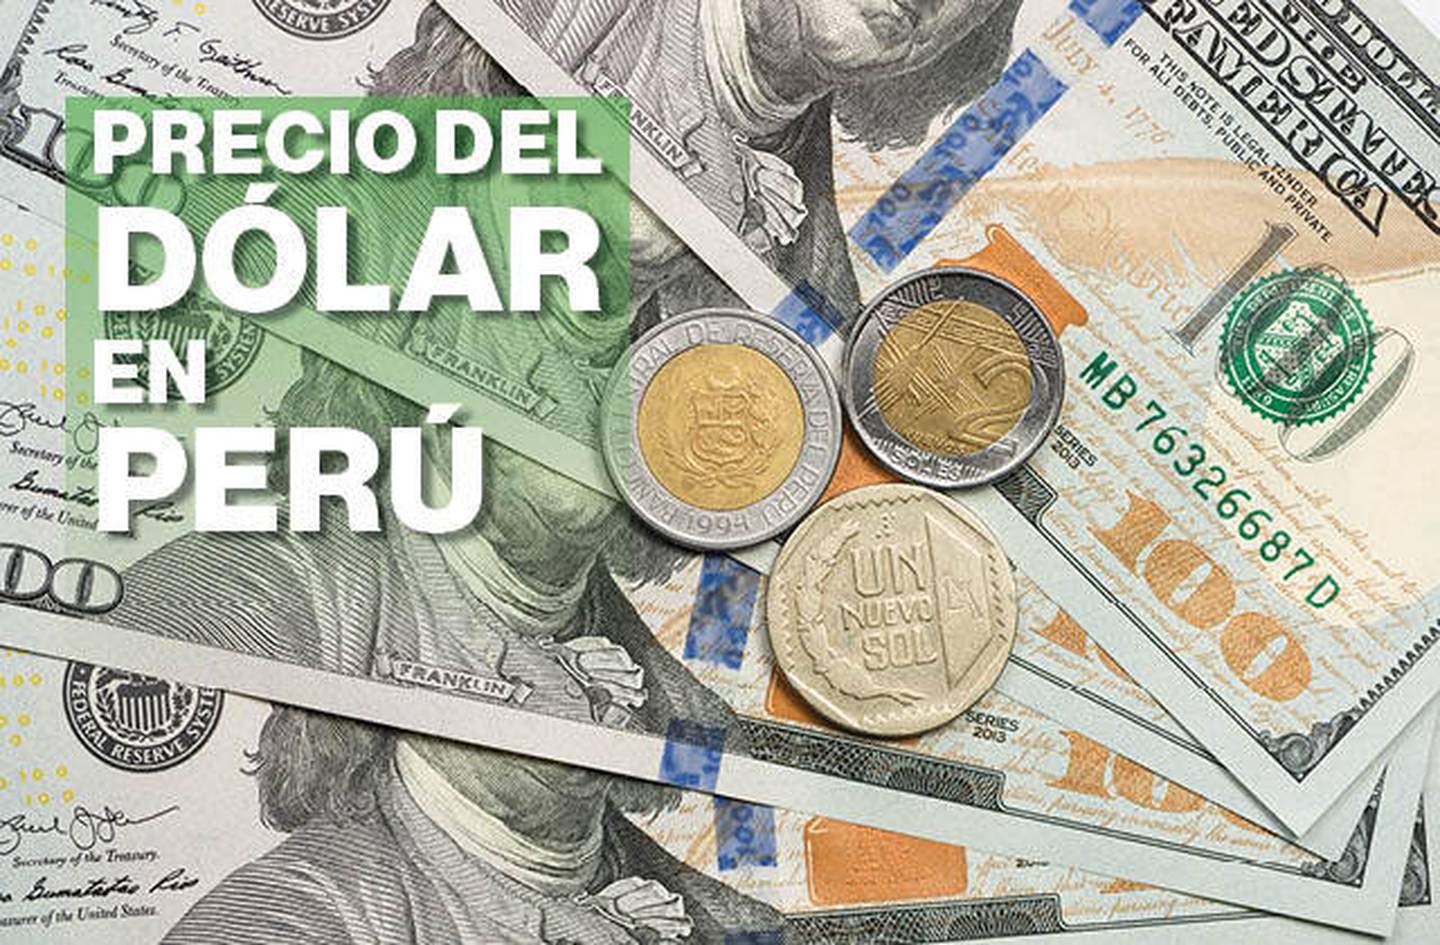 Precio del dólar en Perú cierra debajo de 4 soles por US$1: ¿A qué se debe?dfd